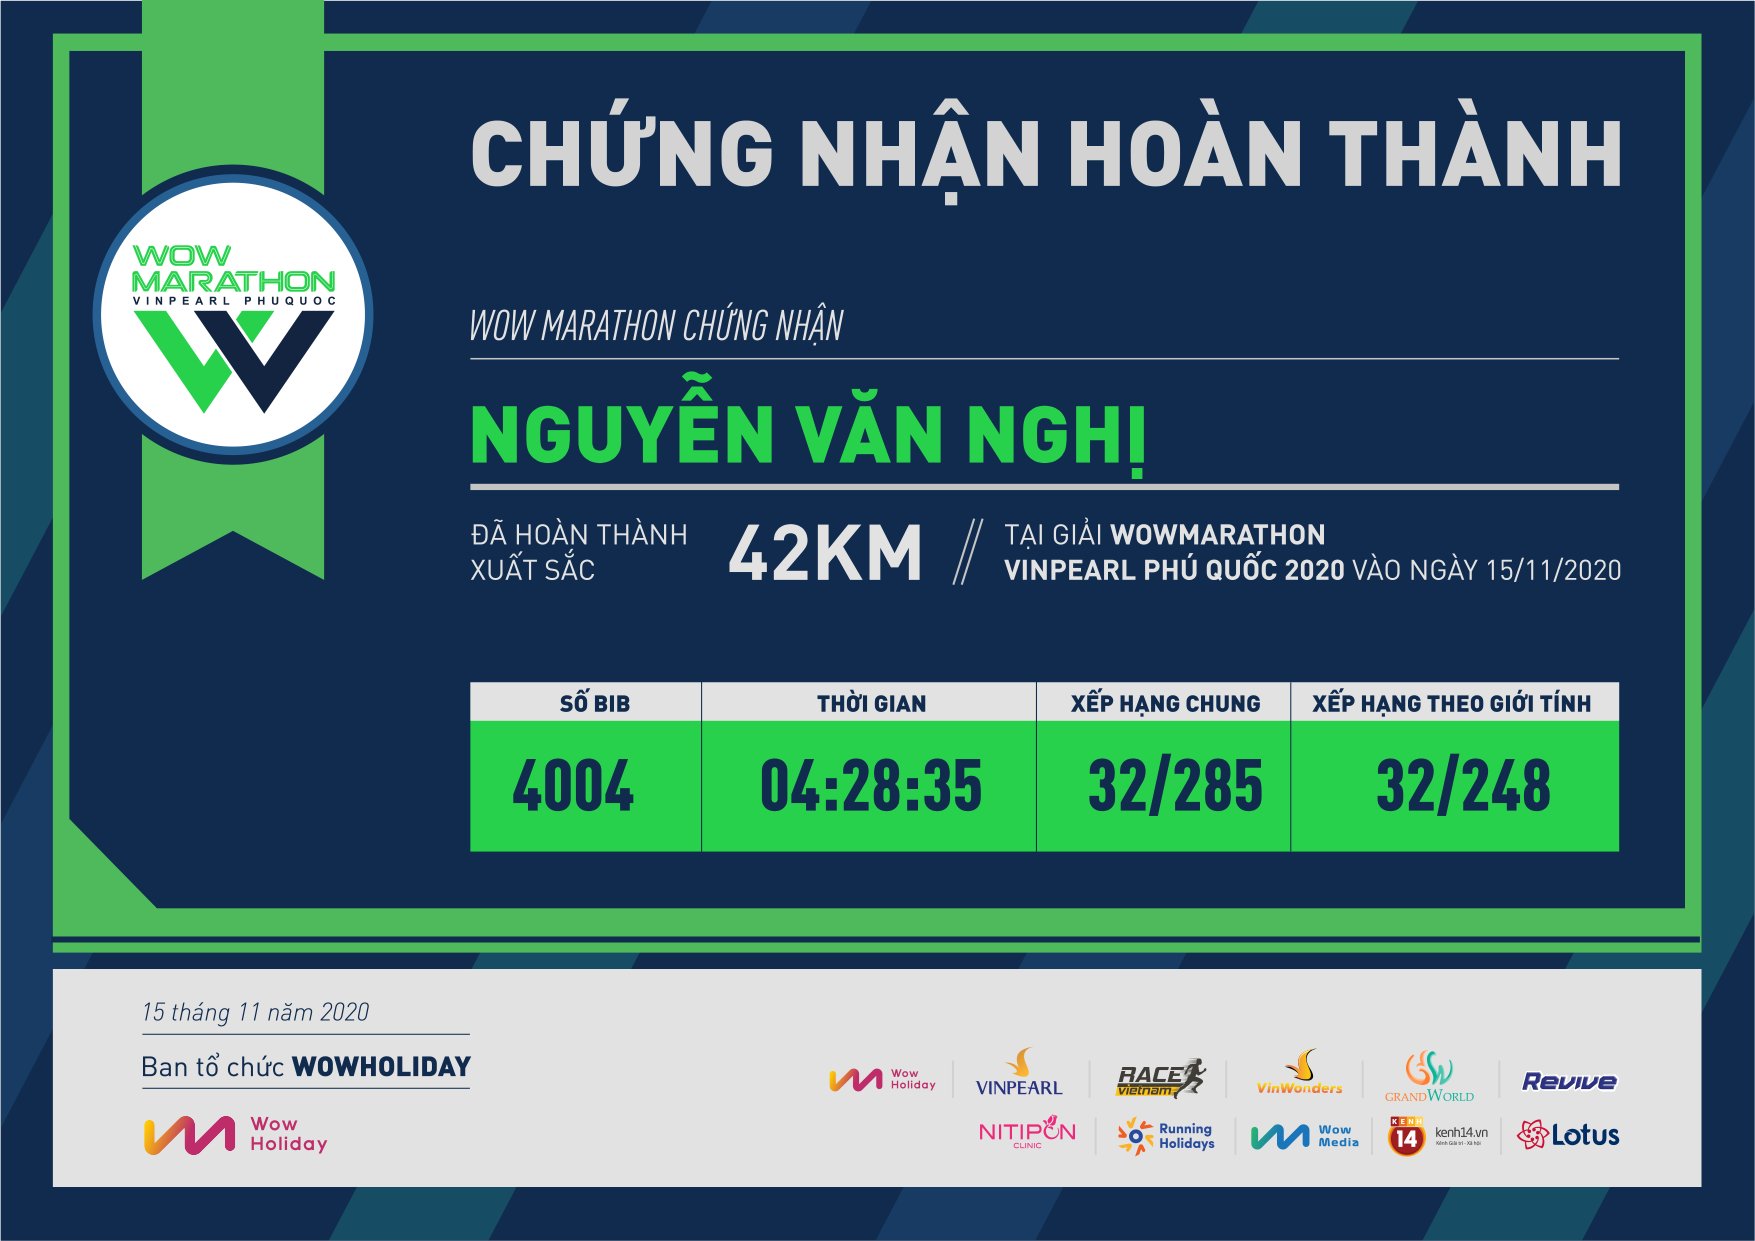 4004 - Nguyễn Văn Nghị